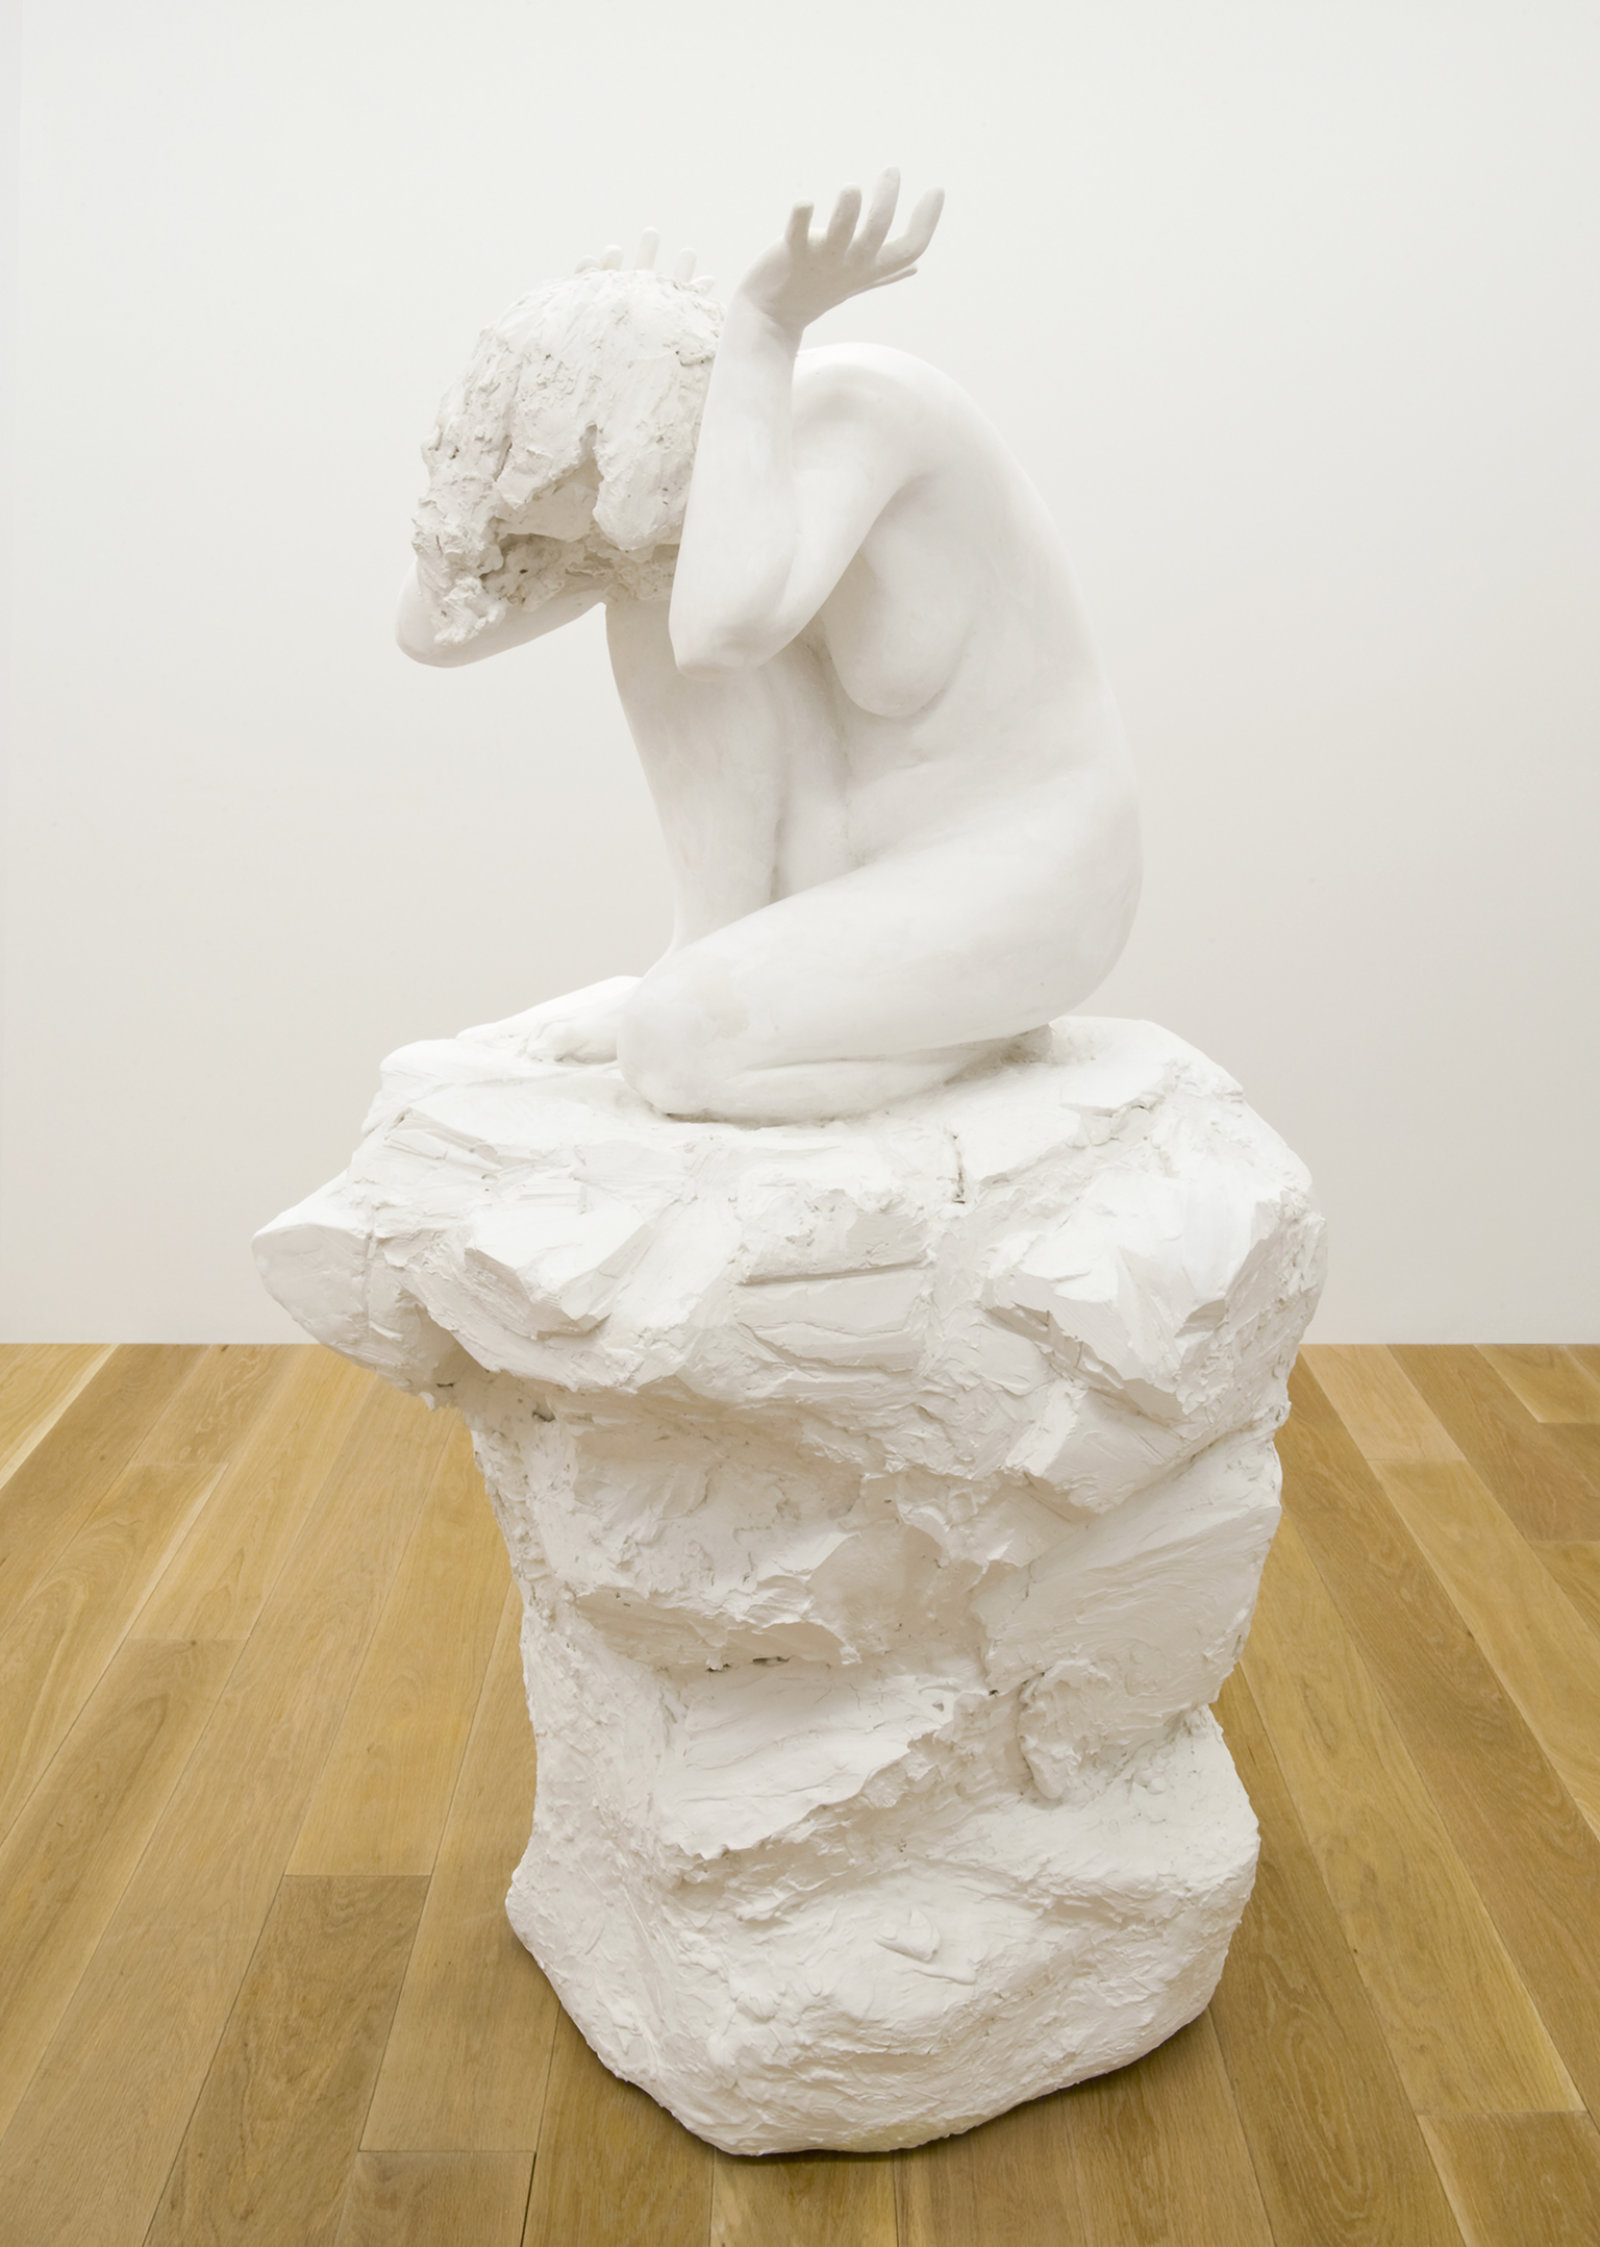 Damian Moppett, Fallen Caryatid, 2006, plaster, 72 x 36 x 38 in. (183 x 91 x 97 cm)